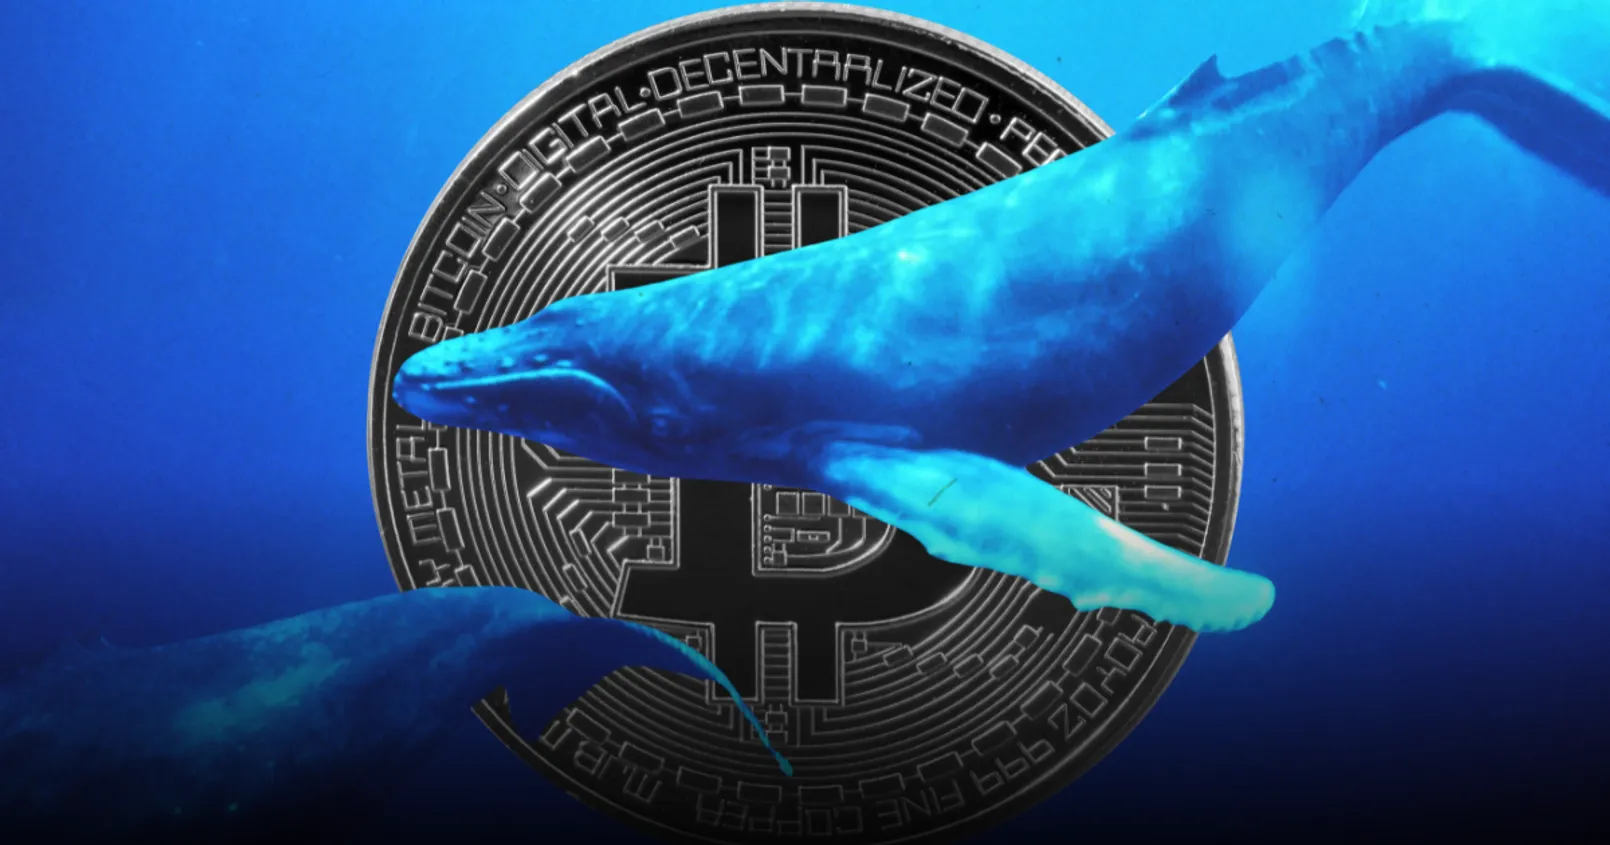  วาฬหน้าใหม่ ครอบครอง Bitcoin รวมกันไปแล้วถึง 1.8 ล้าน BTC